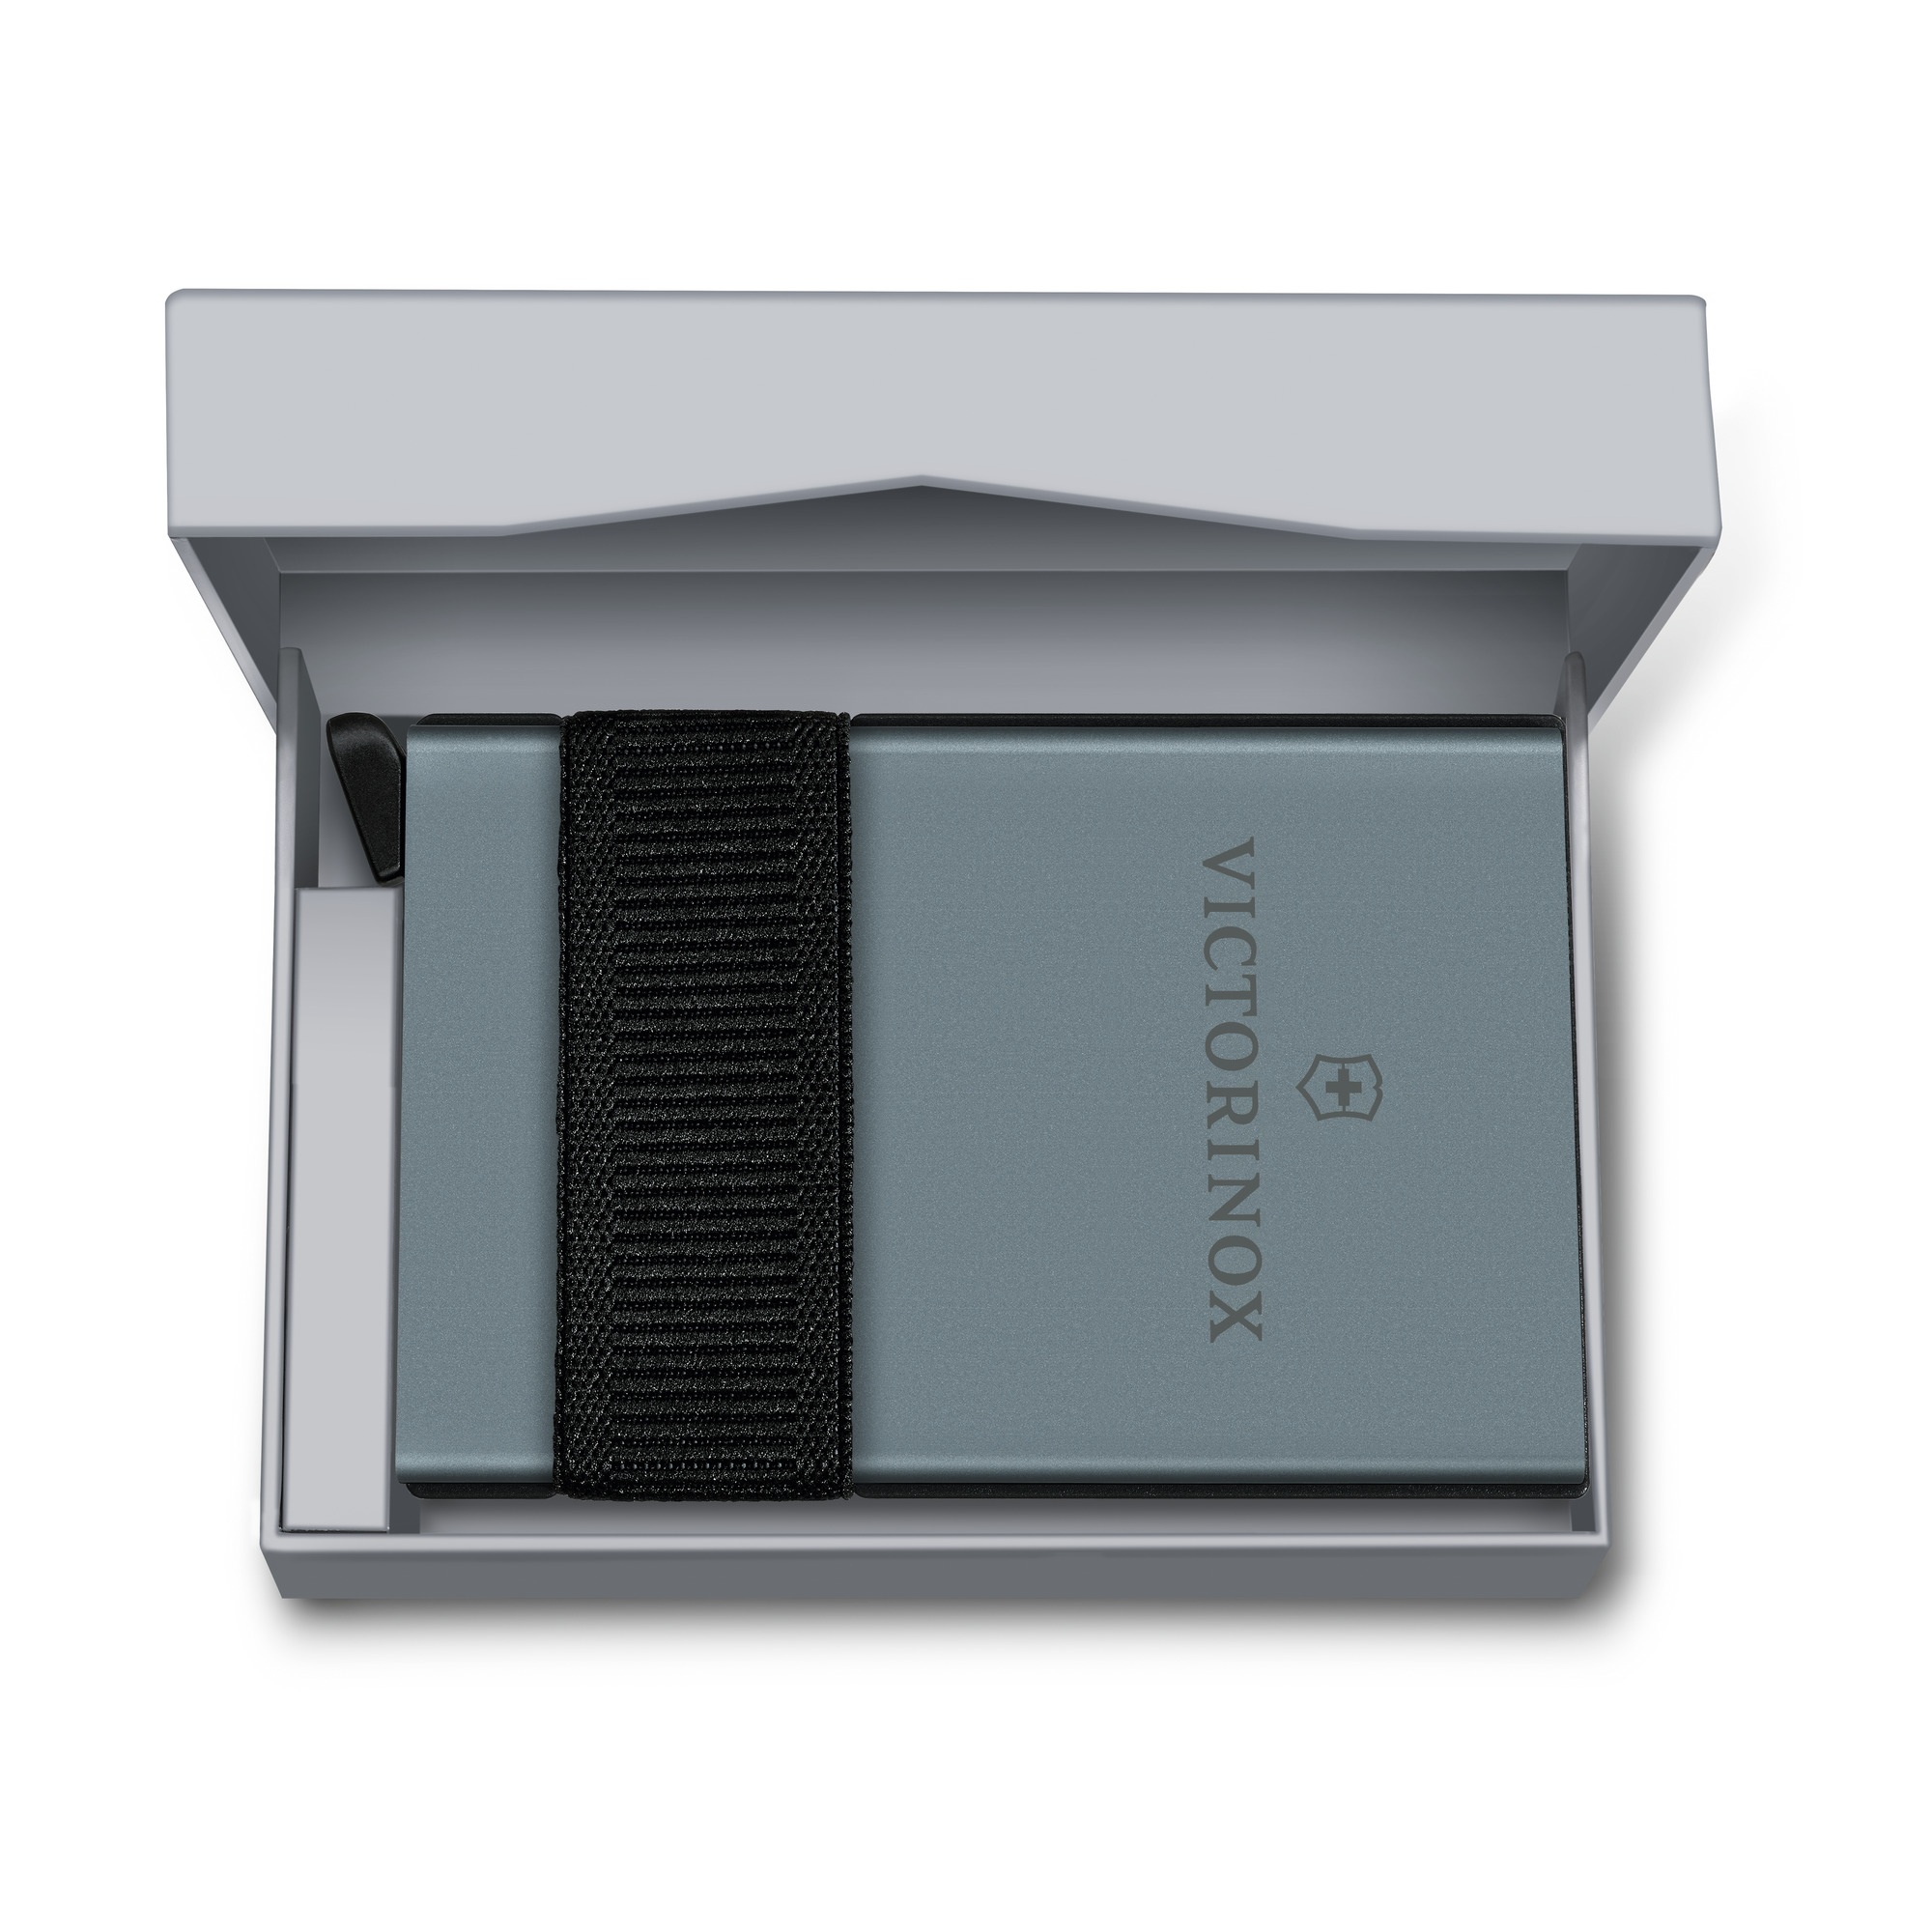 Victorinox Smart Card Wallet, Sharp Gray